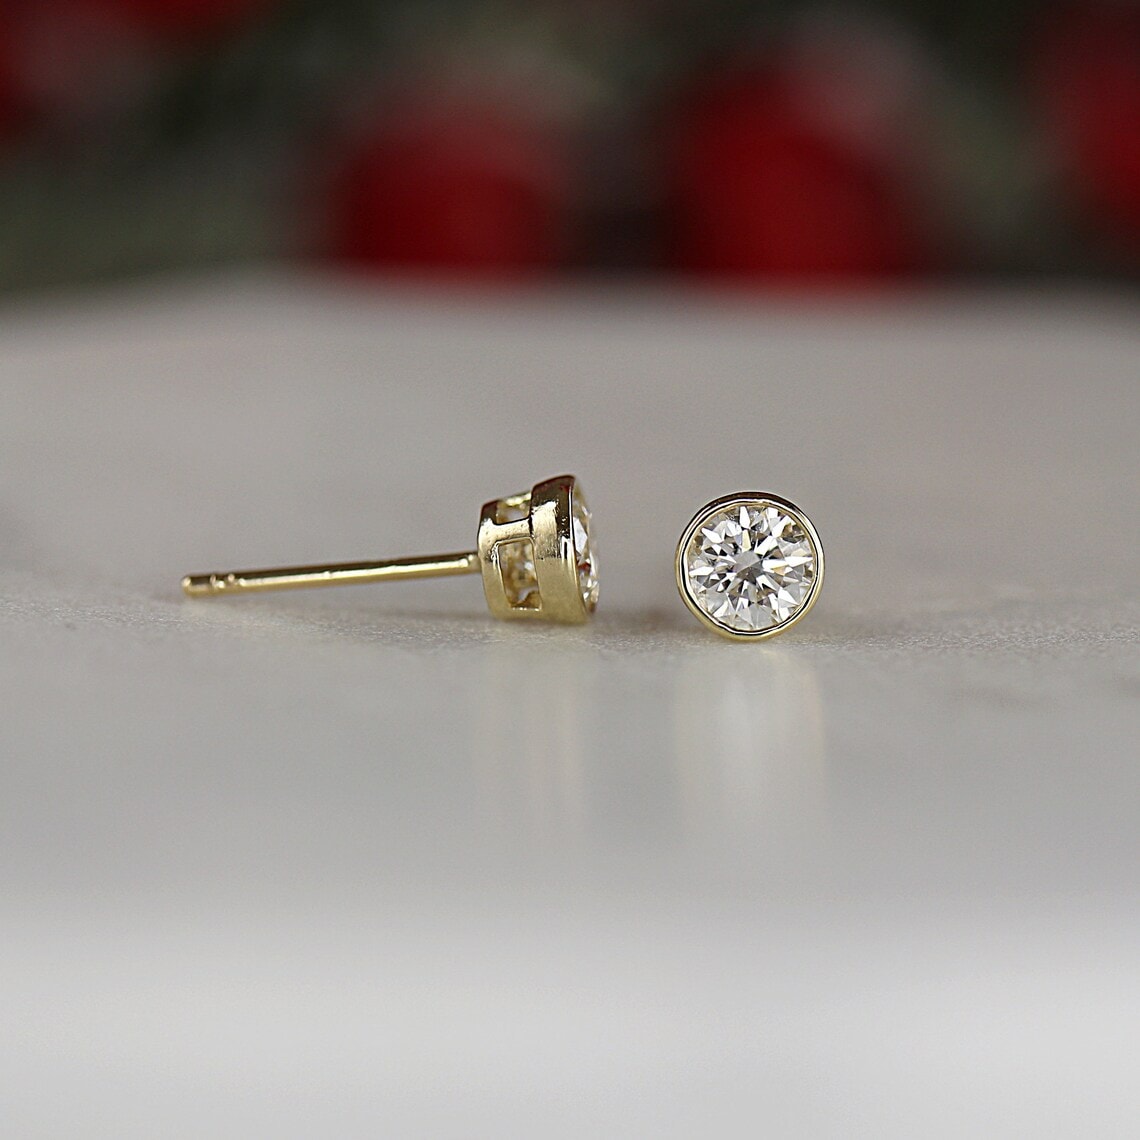 diamond earrings in bezel setting with gold